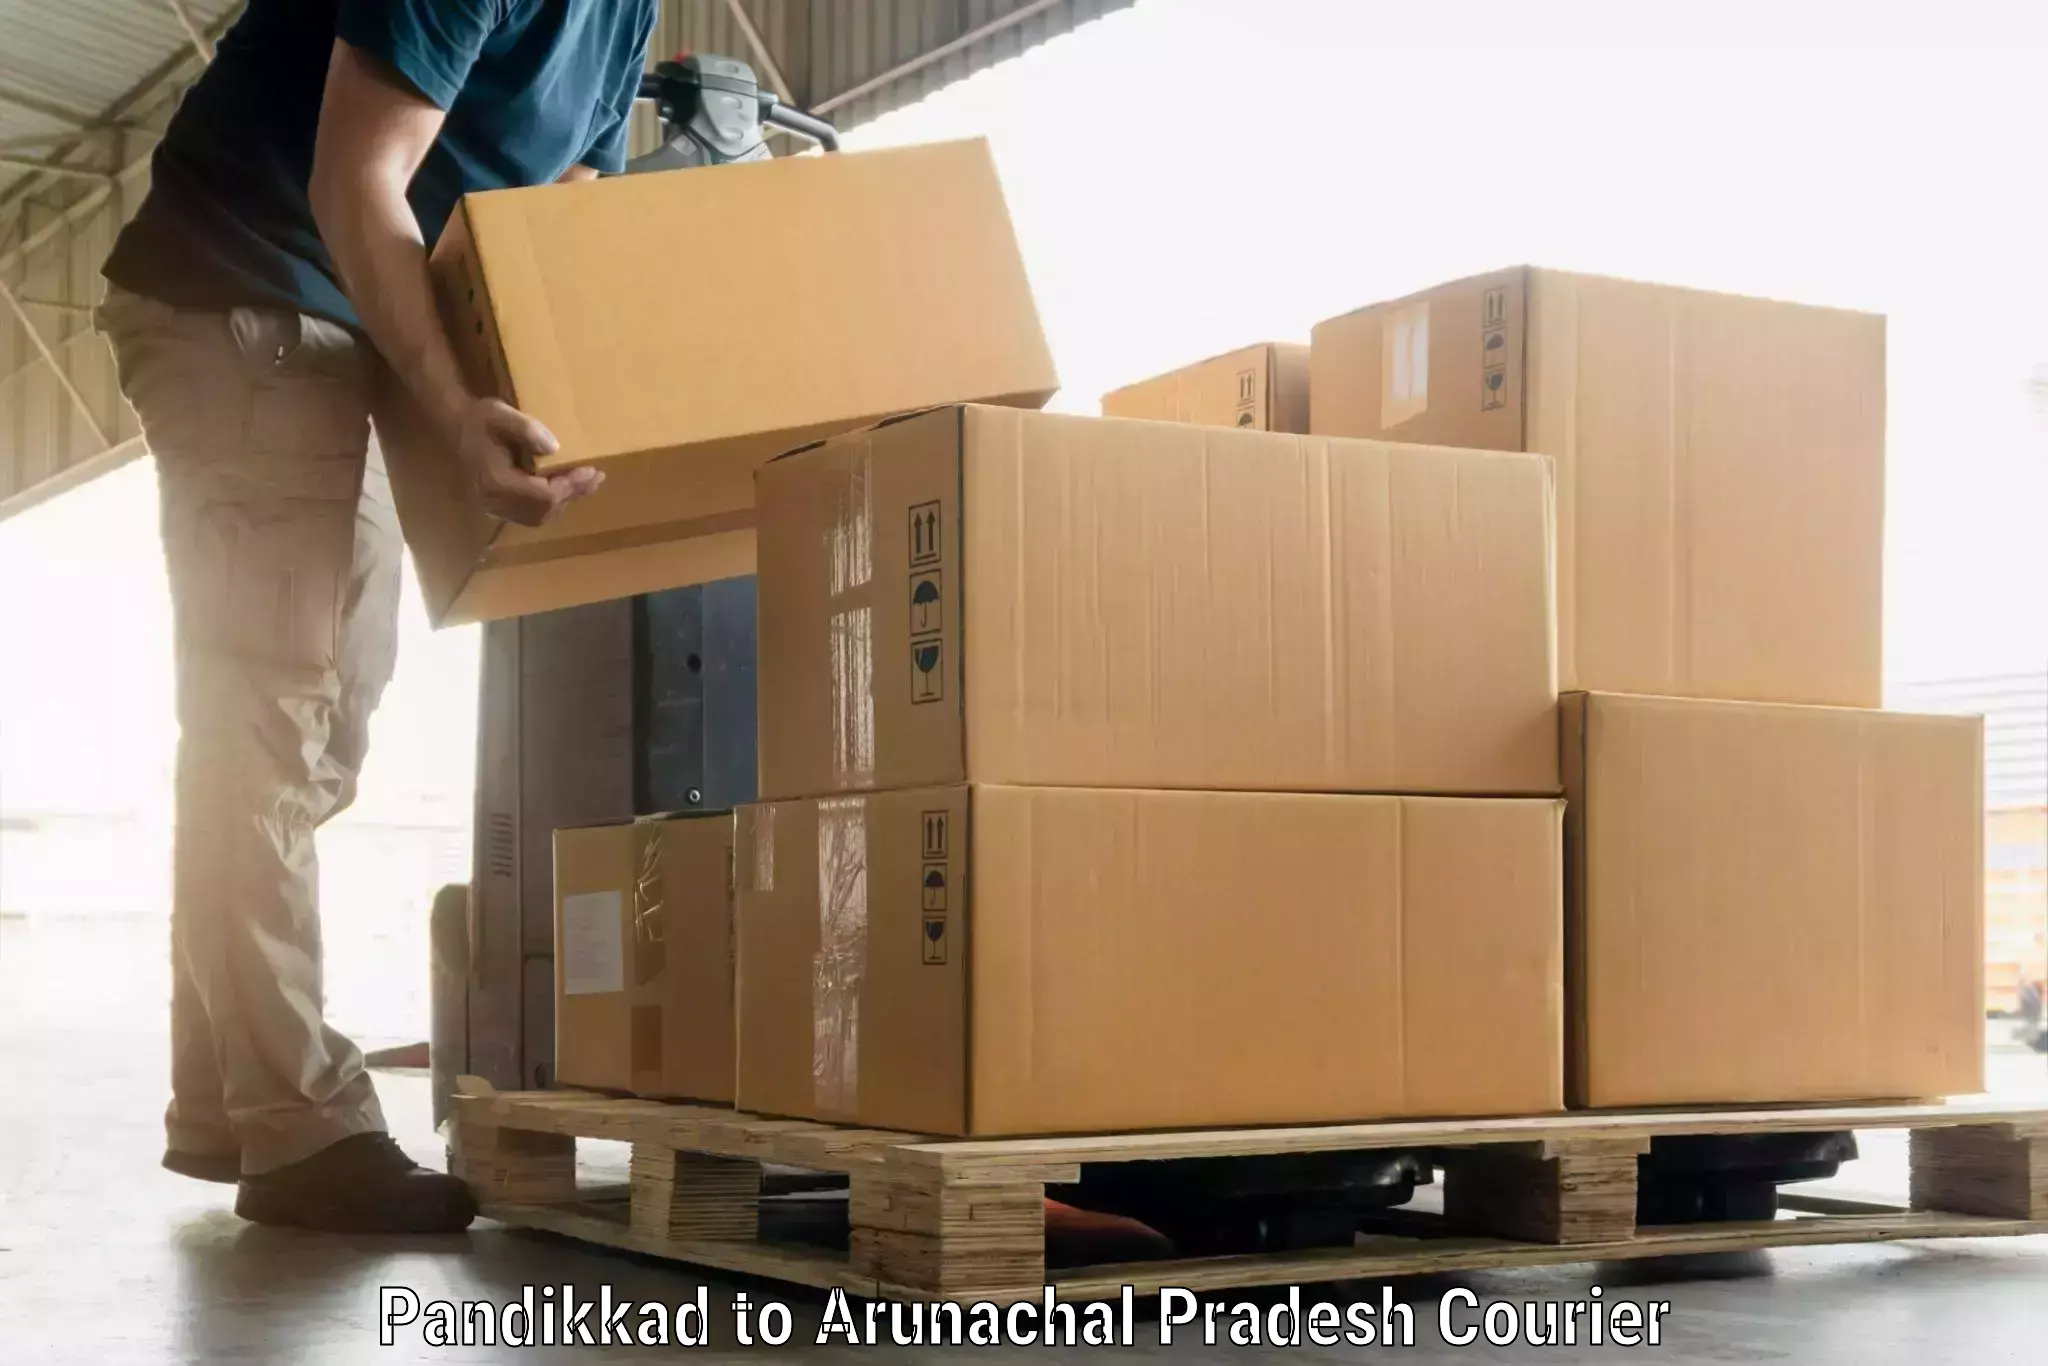 Baggage transport scheduler Pandikkad to Jairampur